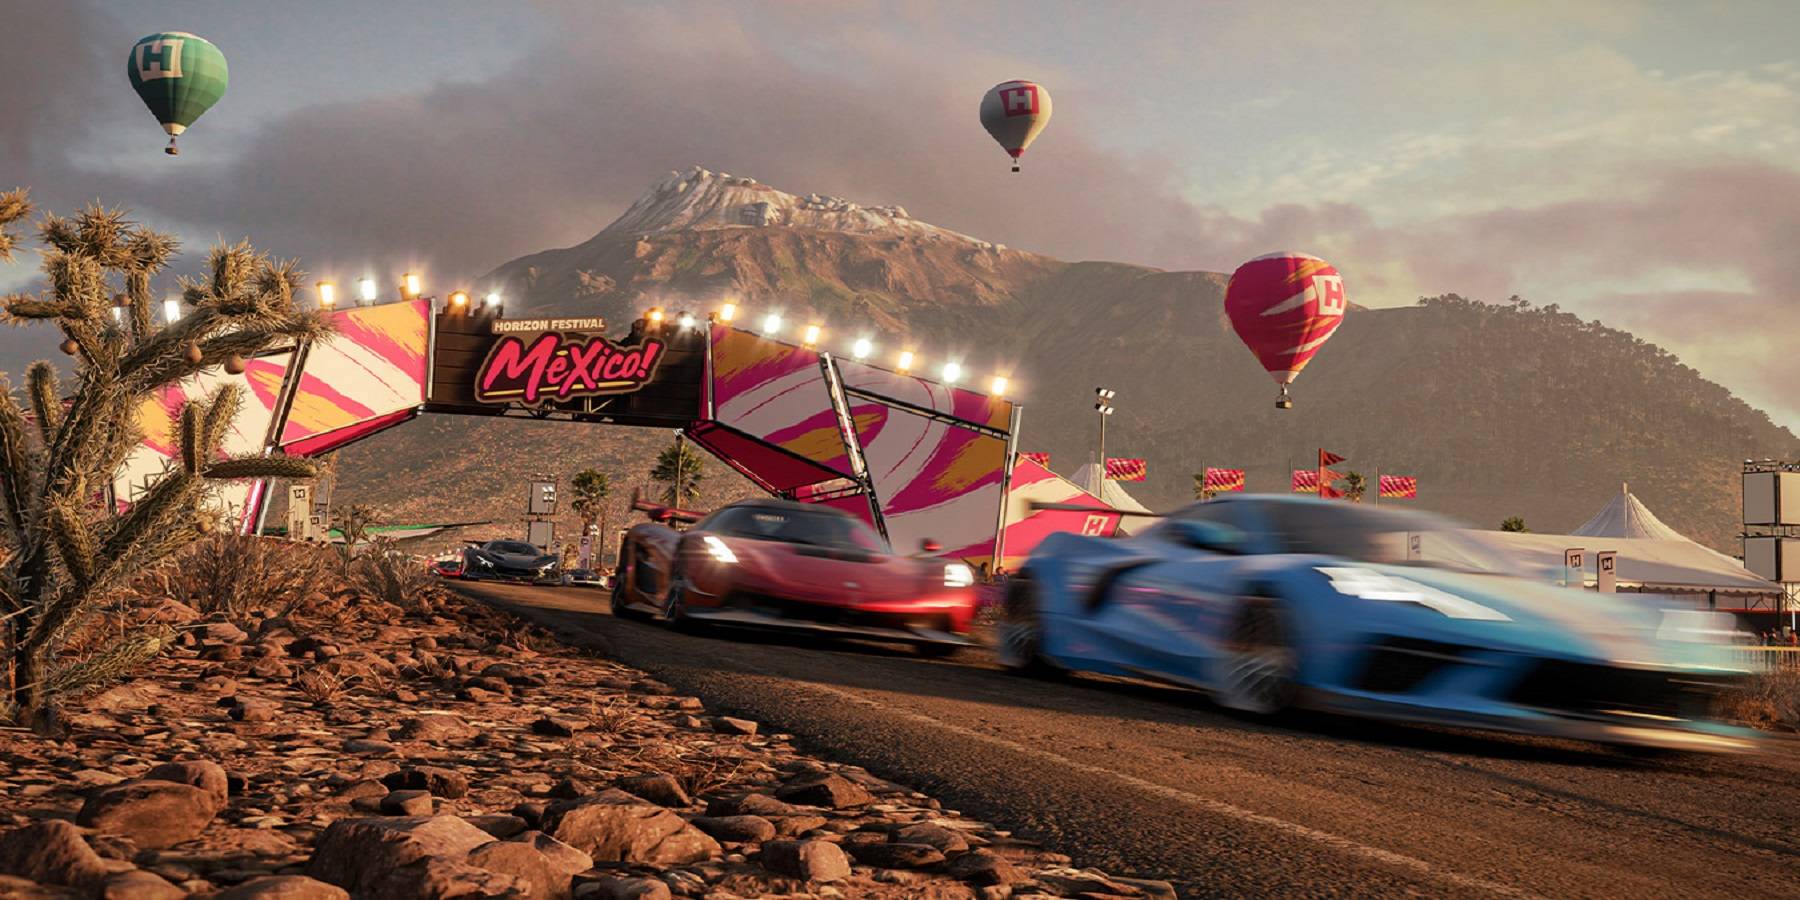  az Xbox vezetője, Phil Spencer a Forza Horizon 5 szinte azonnali sikerét hirdeti.